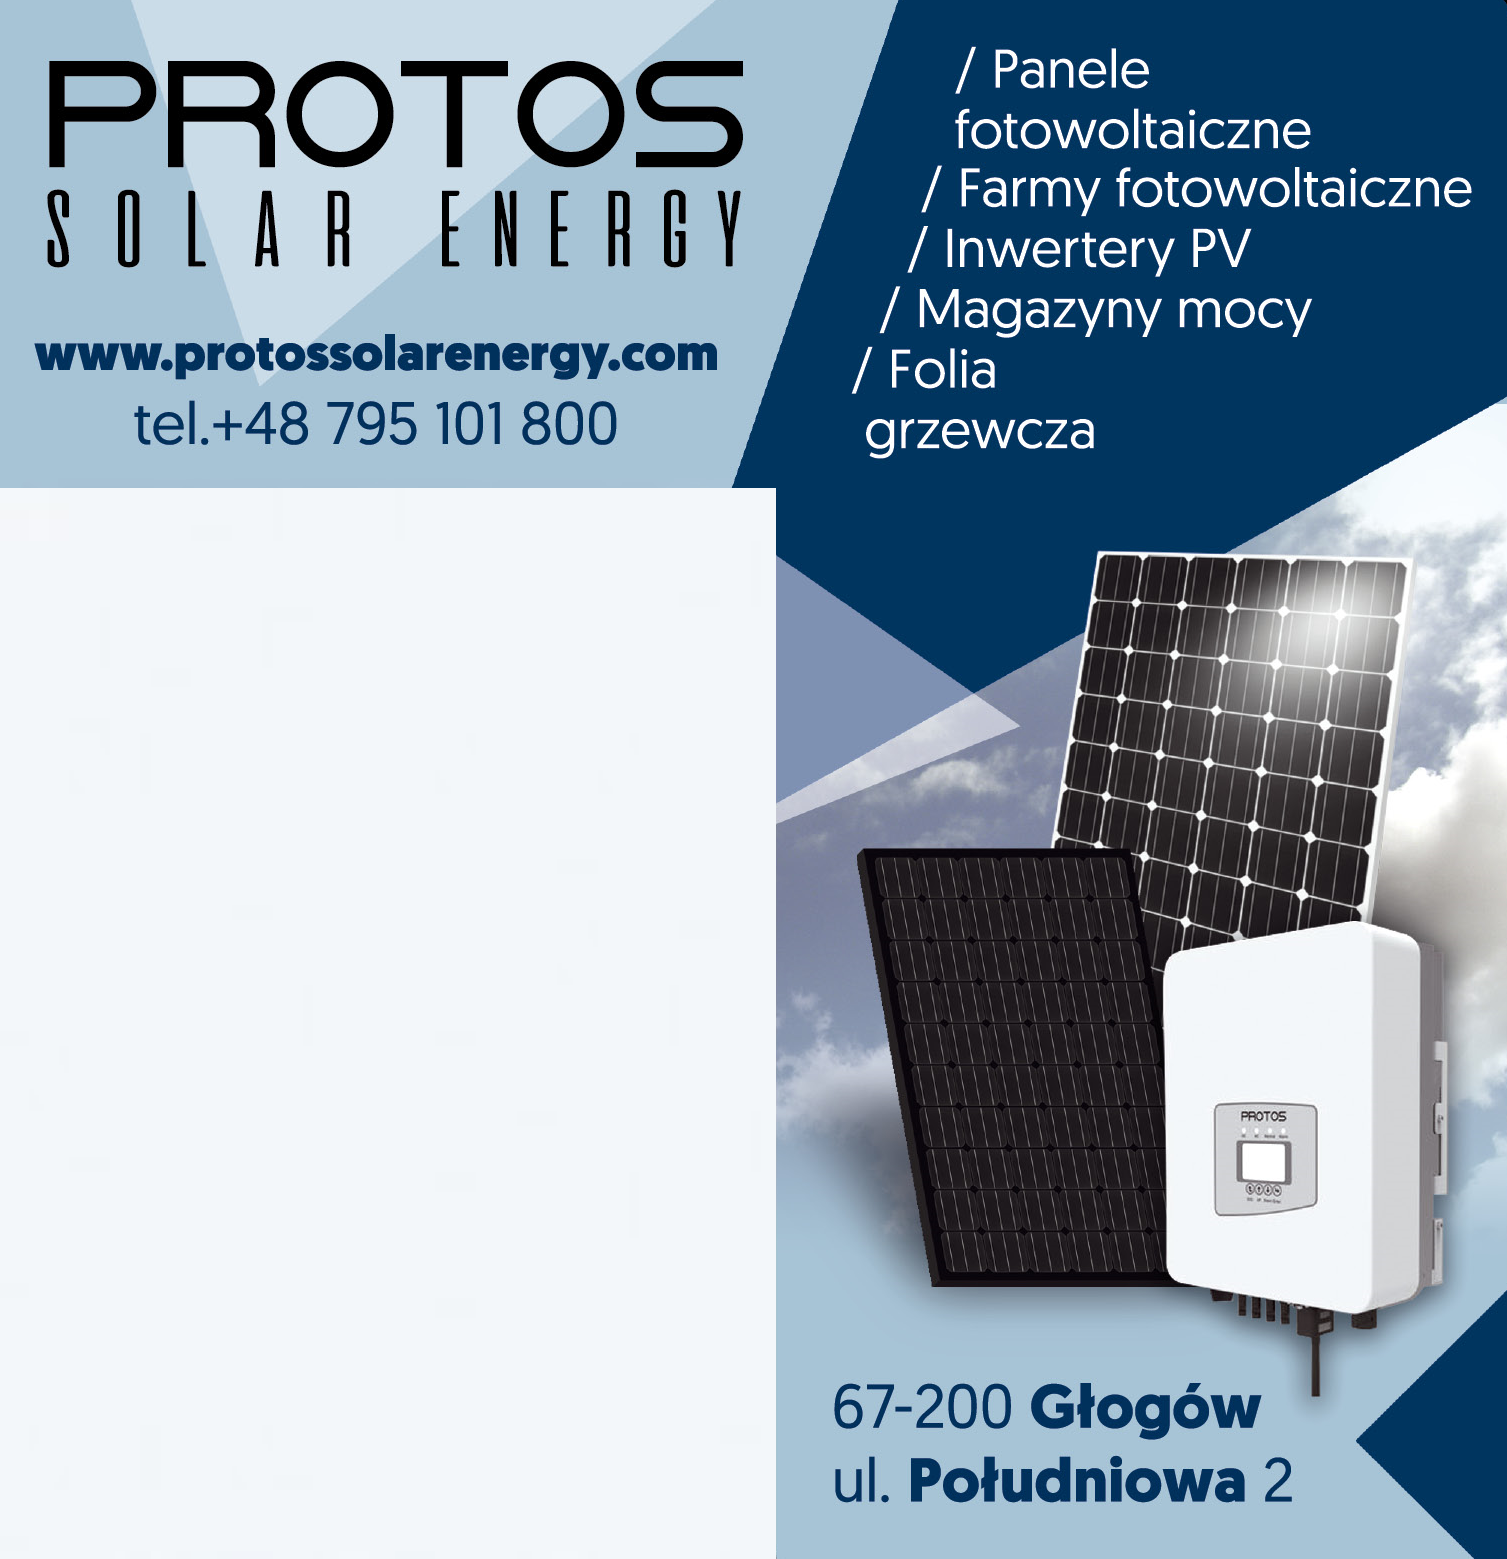 PROTOS SOLAR ENERGY Sp. z o.o. Głogów Panele Fotowoltaiczne / Farmy Fotowoltaiczne / Magazyny Mocy